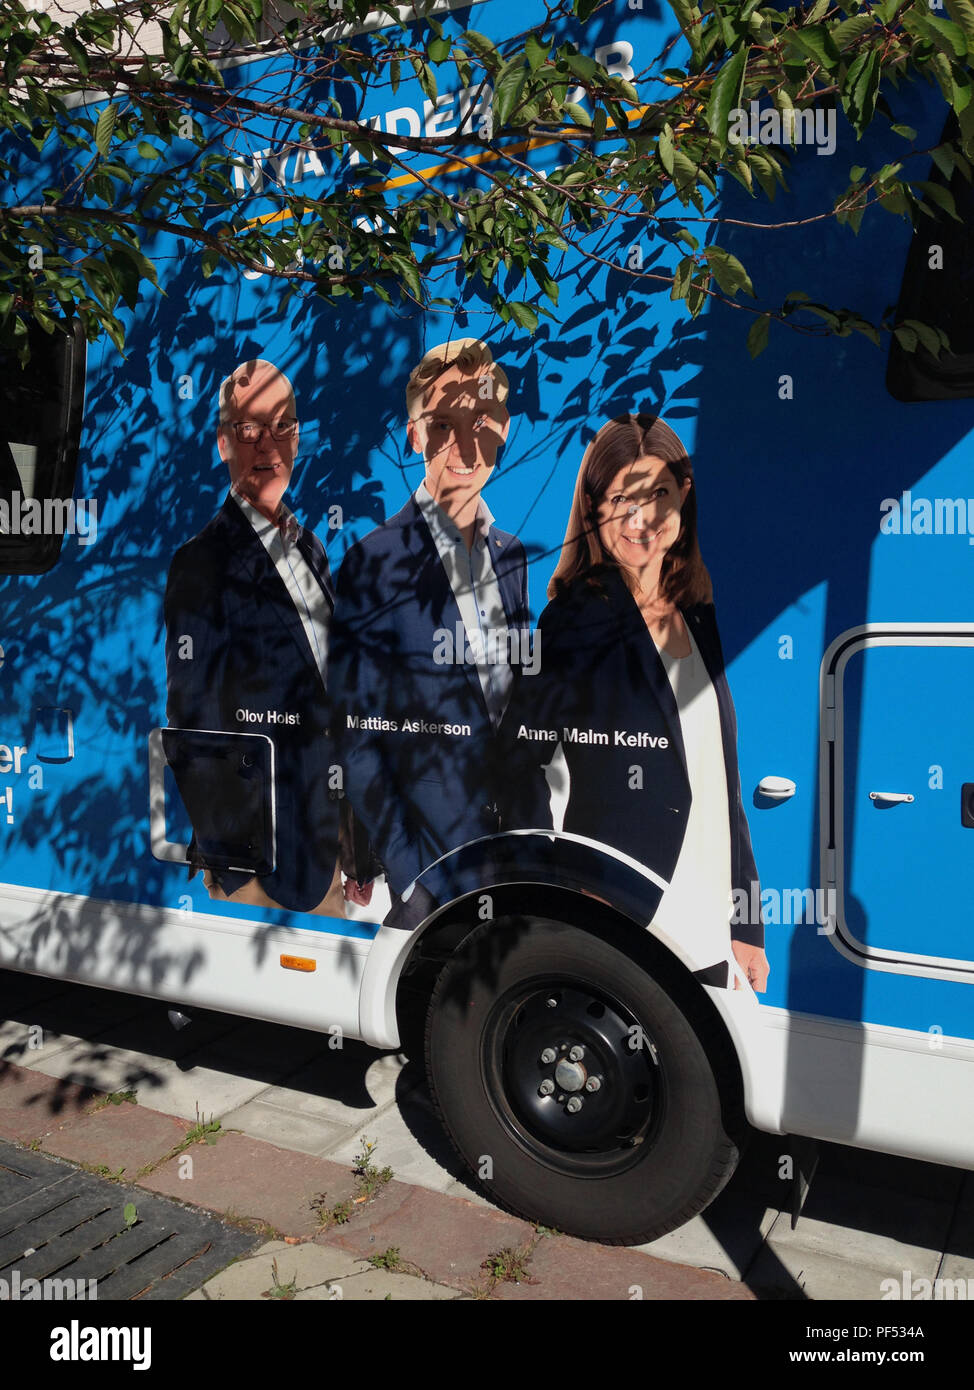 Pré-campagne électorale avec des portraits de la Swedish Parti modéré (M - Modernaterna) candidats, sur un véhicule stationné à côté d'un arbre, casting sa feuille ombres sur les graphiques. Märsta, Sigtuna kommun, Stockholm, Suède. Banque D'Images